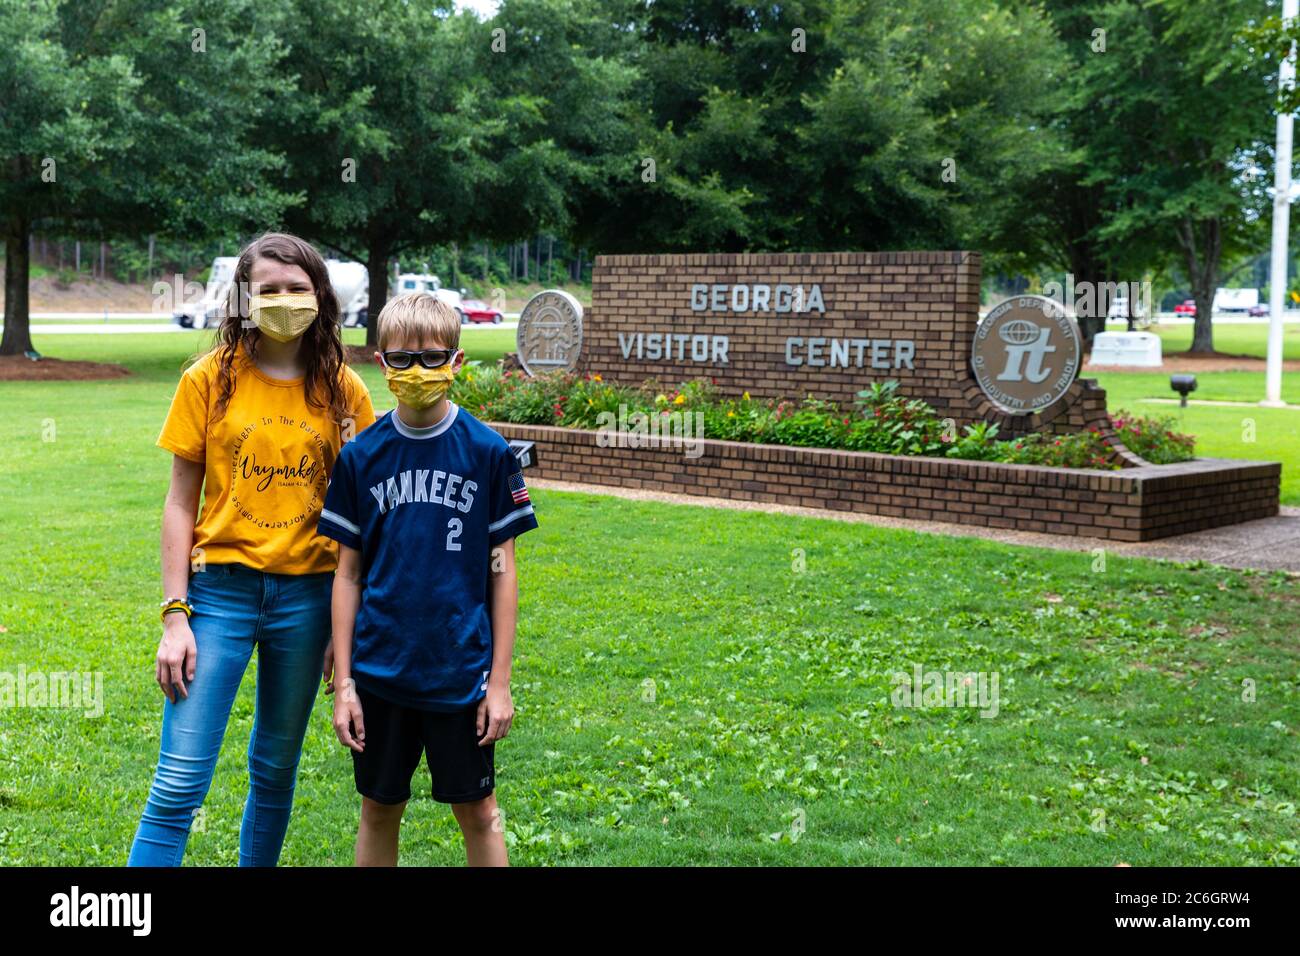 Tallapoosa, GA, Etats-Unis: Touristes portant un masque facial lors de la visite du Georgia Visitor Center pendant la pandémie COVID-19 Banque D'Images